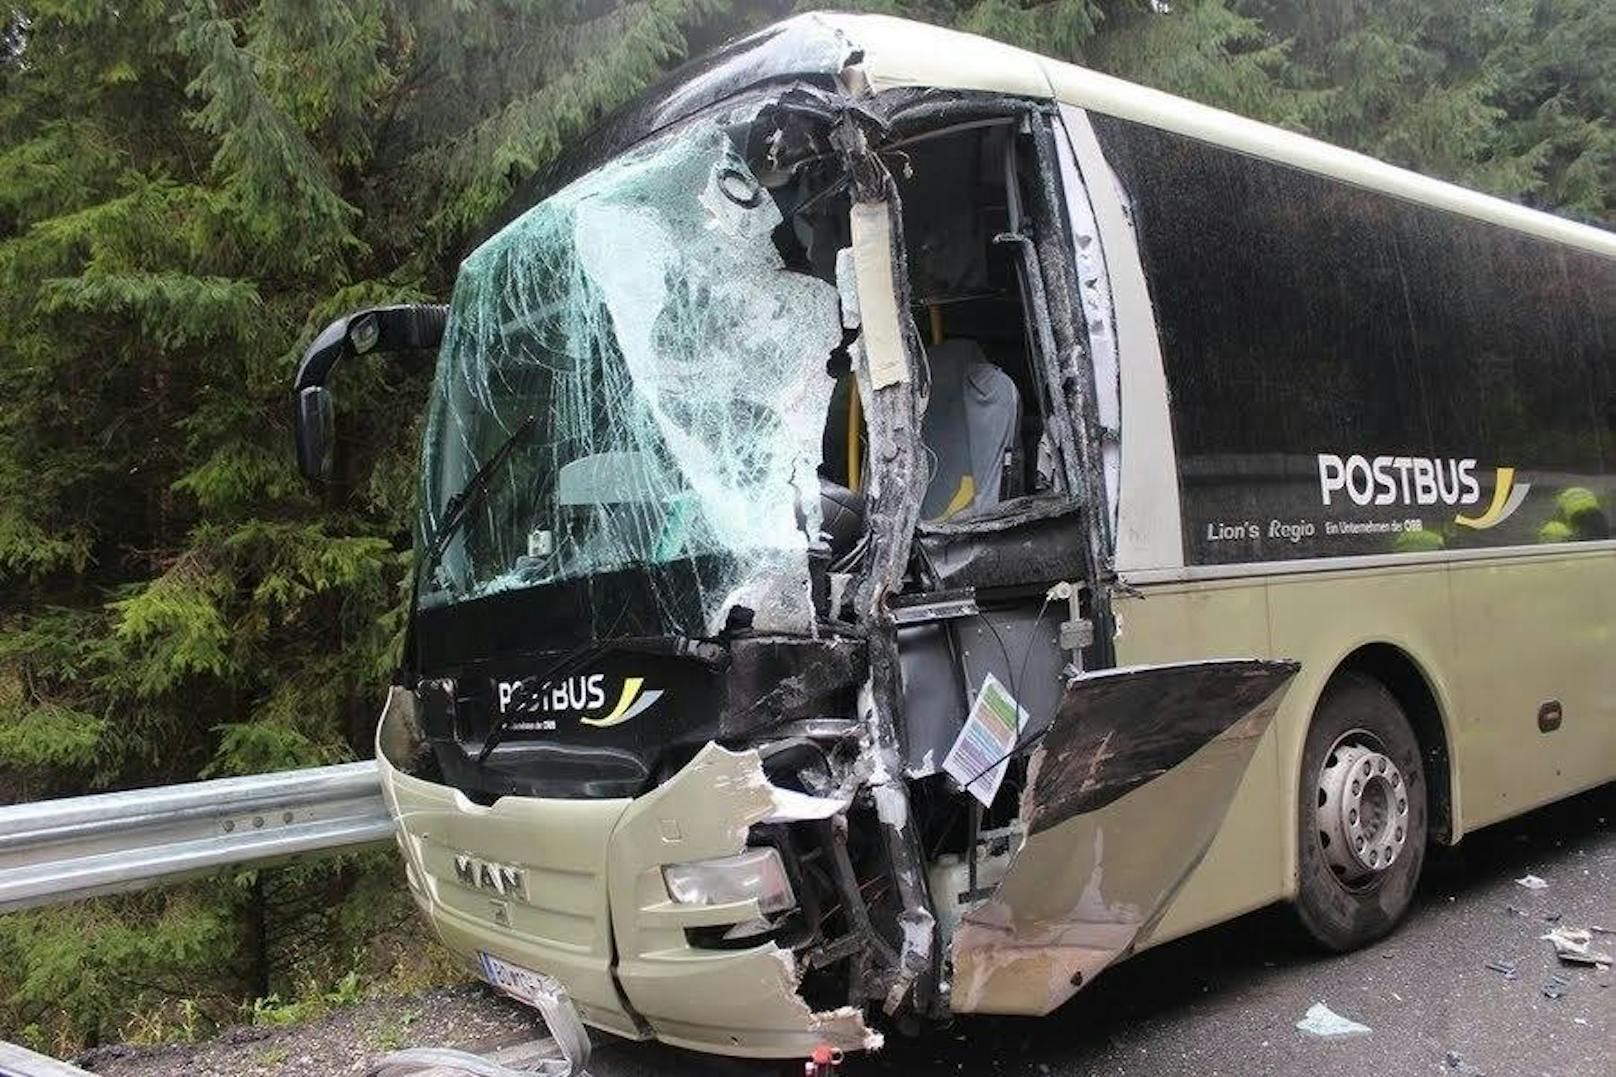 Auf der B146 hat sich am Dienstag ein schwerer Verkehrsunfall ereignet. Ein Lkw kollidierte mit einem Schülerbus. Mehrere Personen wurden verletzt